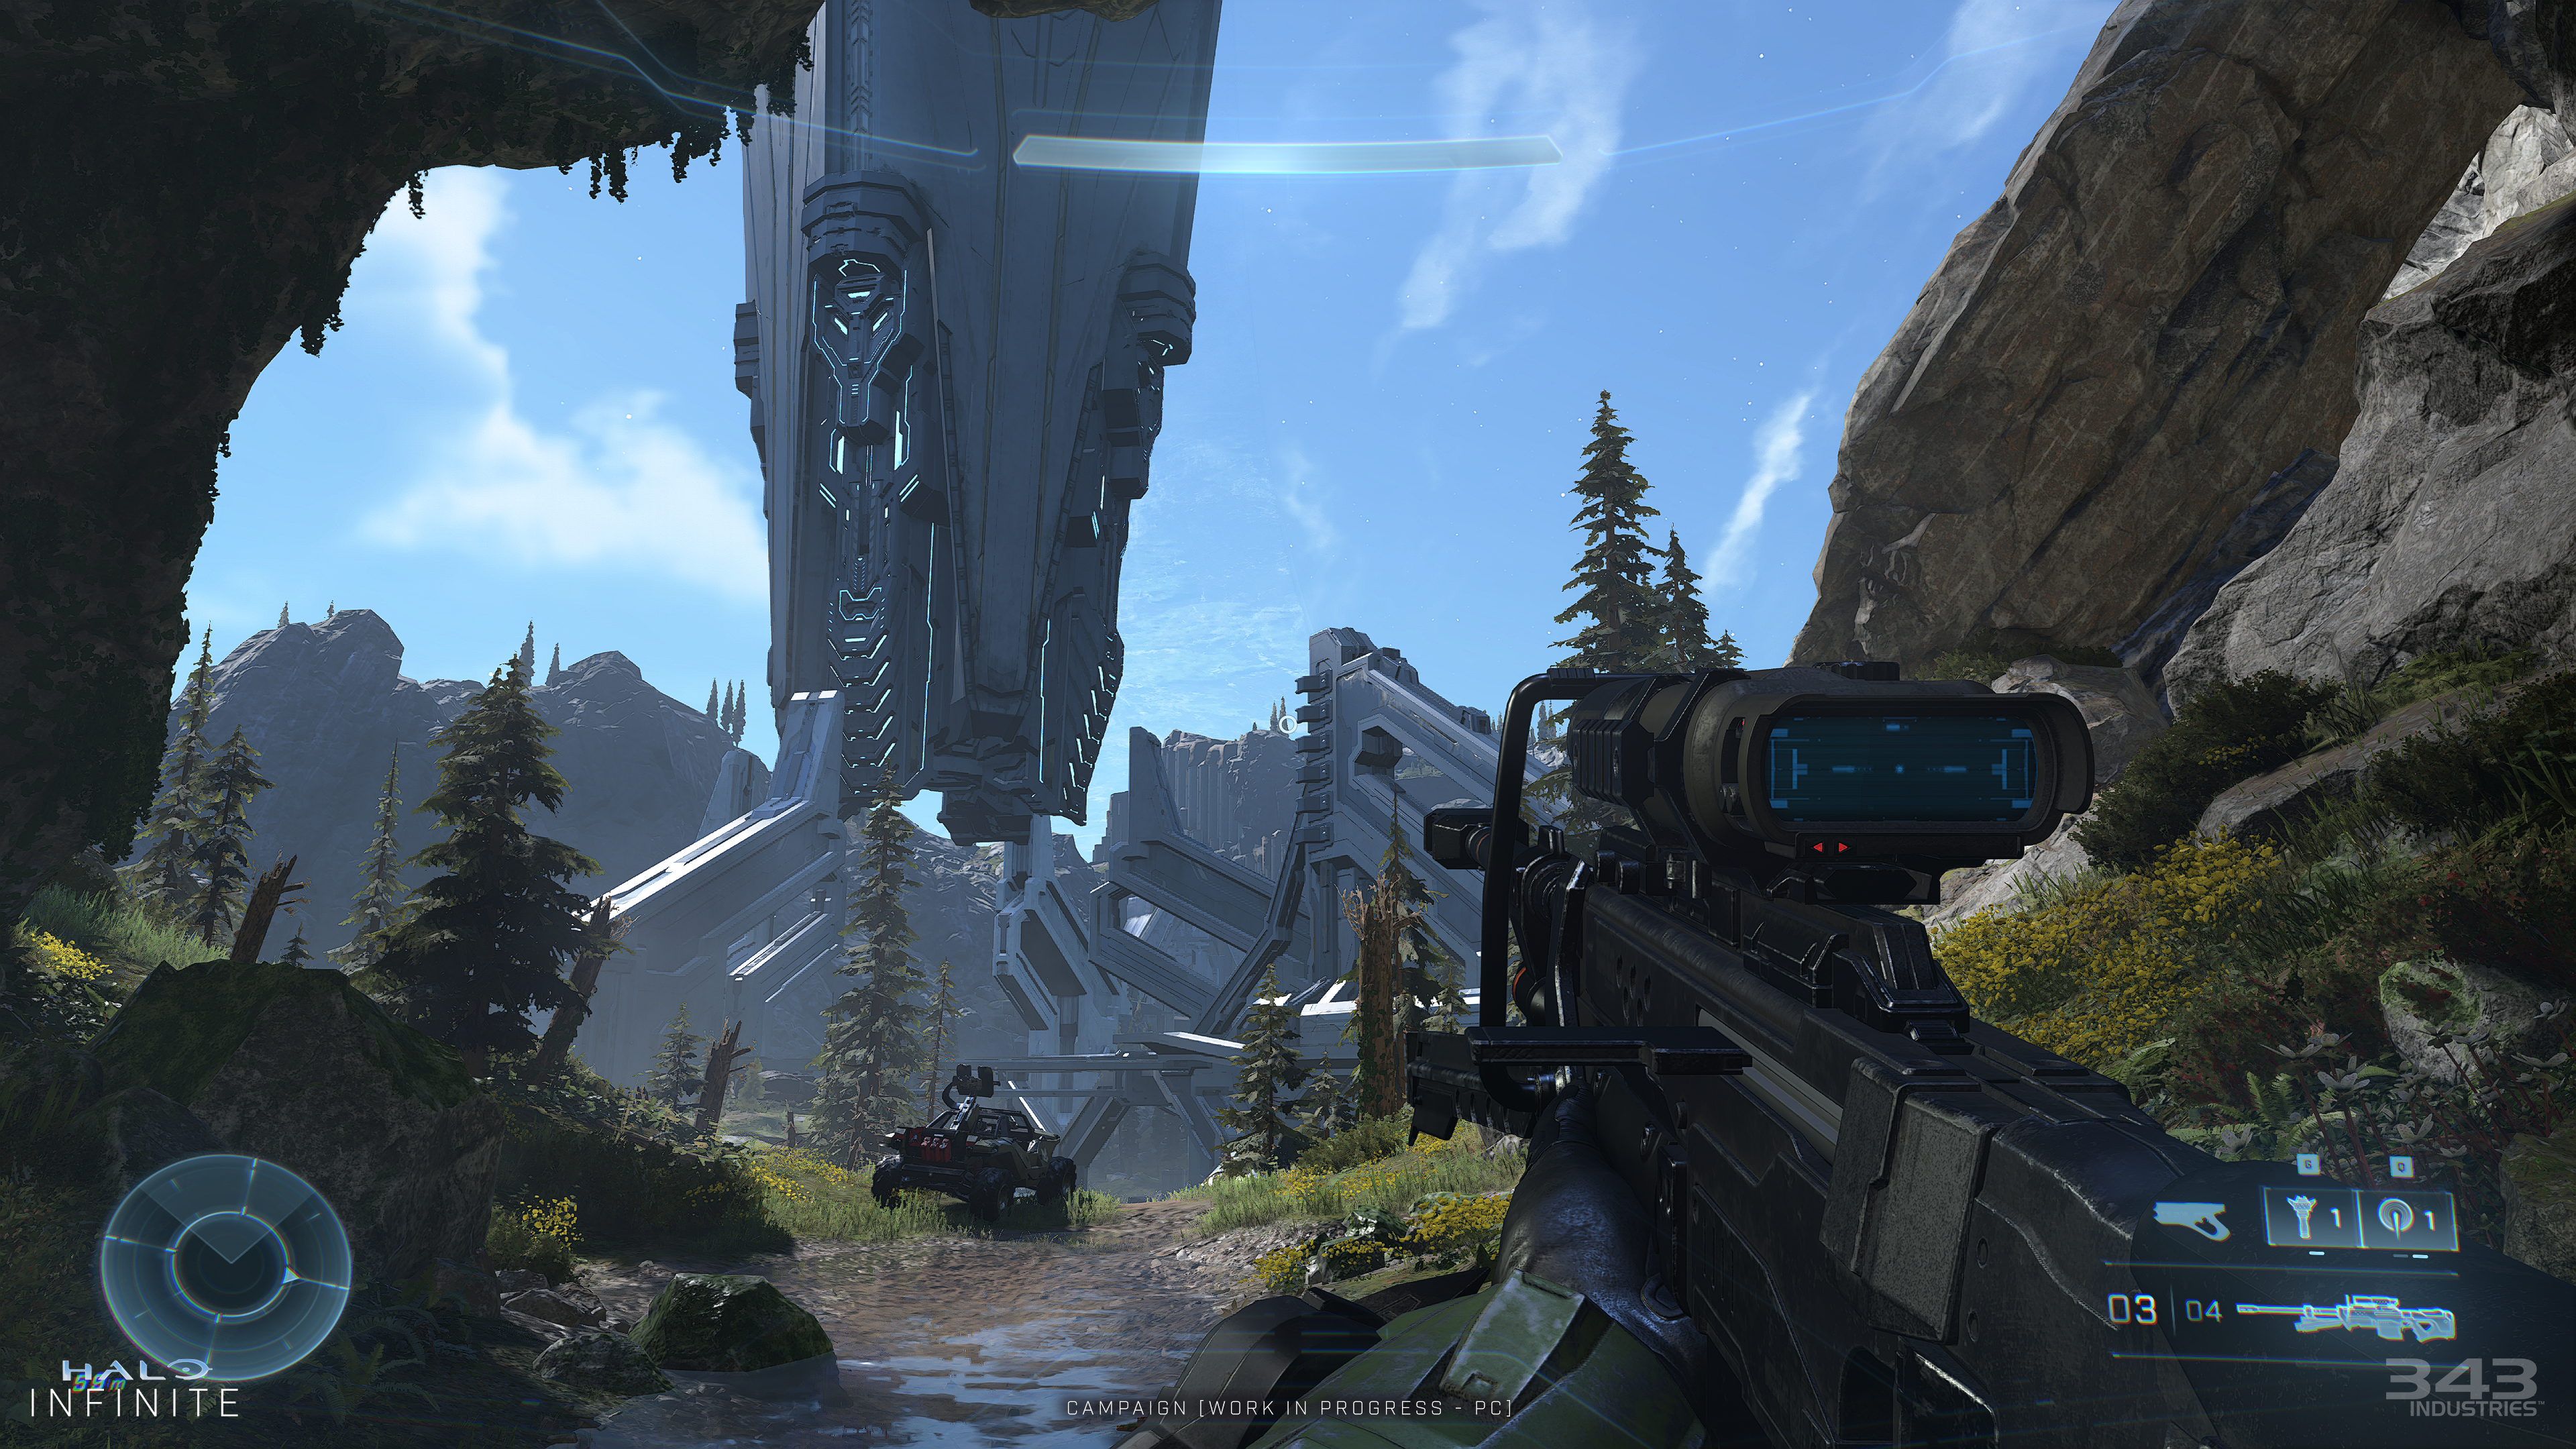 Immagine pubblicata in relazione al seguente contenuto: 343 Industries pubblica gli screenshot in 4K di Halo Infinite su PC | Nome immagine: news31757_Halo-Infinite-Screenshot-4K_1.png